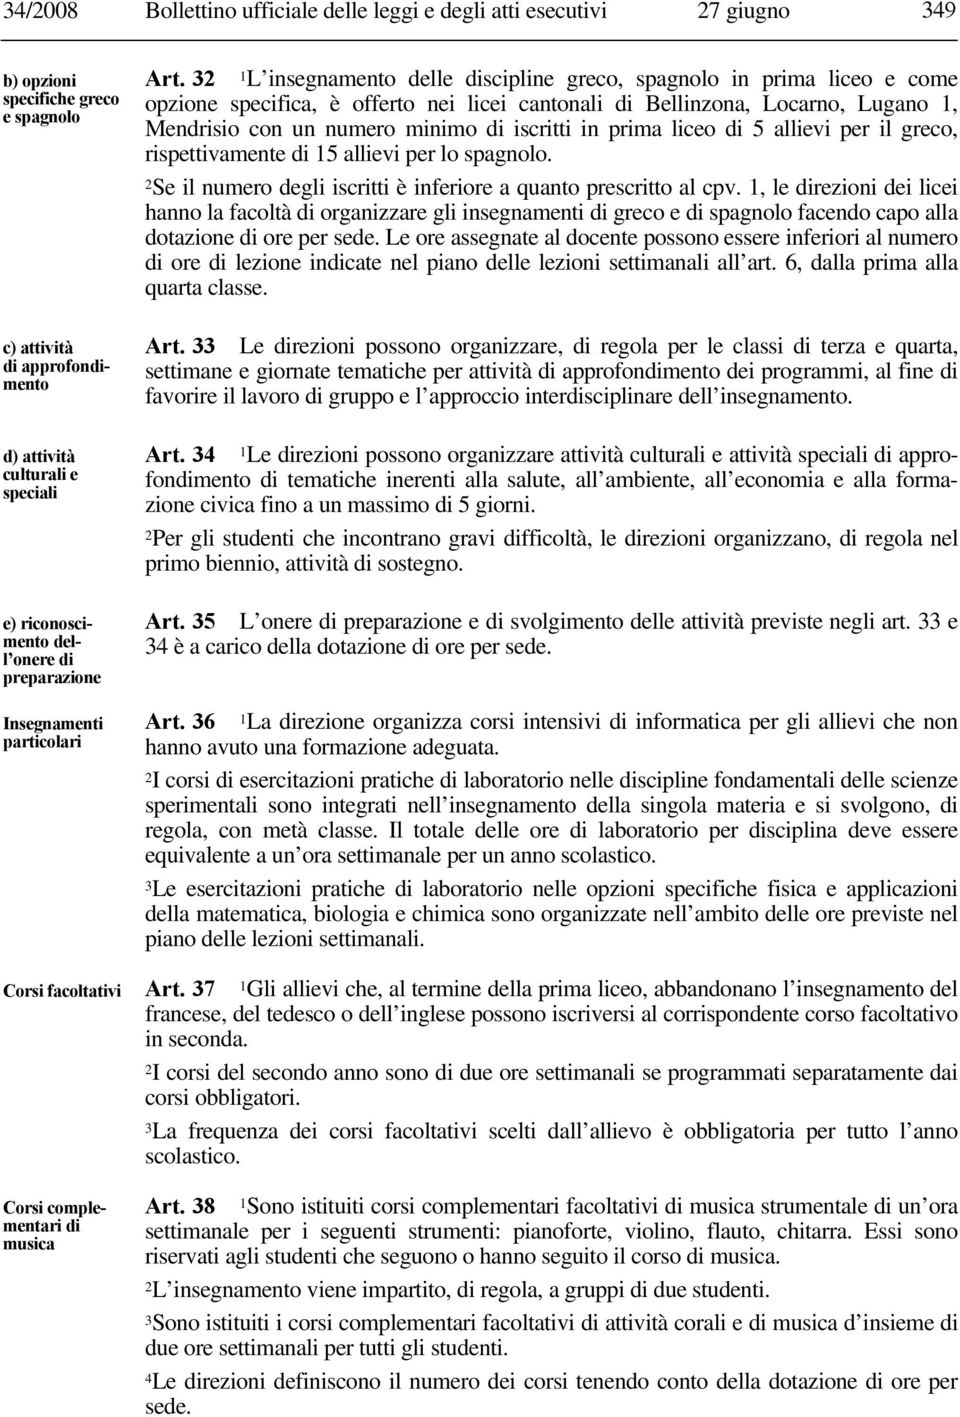 32 1L insegnamento delle discipline greco, spagnolo in prima liceo e come opzione specifica, è offerto nei licei cantonali di Bellinzona, Locarno, Lugano 1, Mendrisio con un numero minimo di iscritti